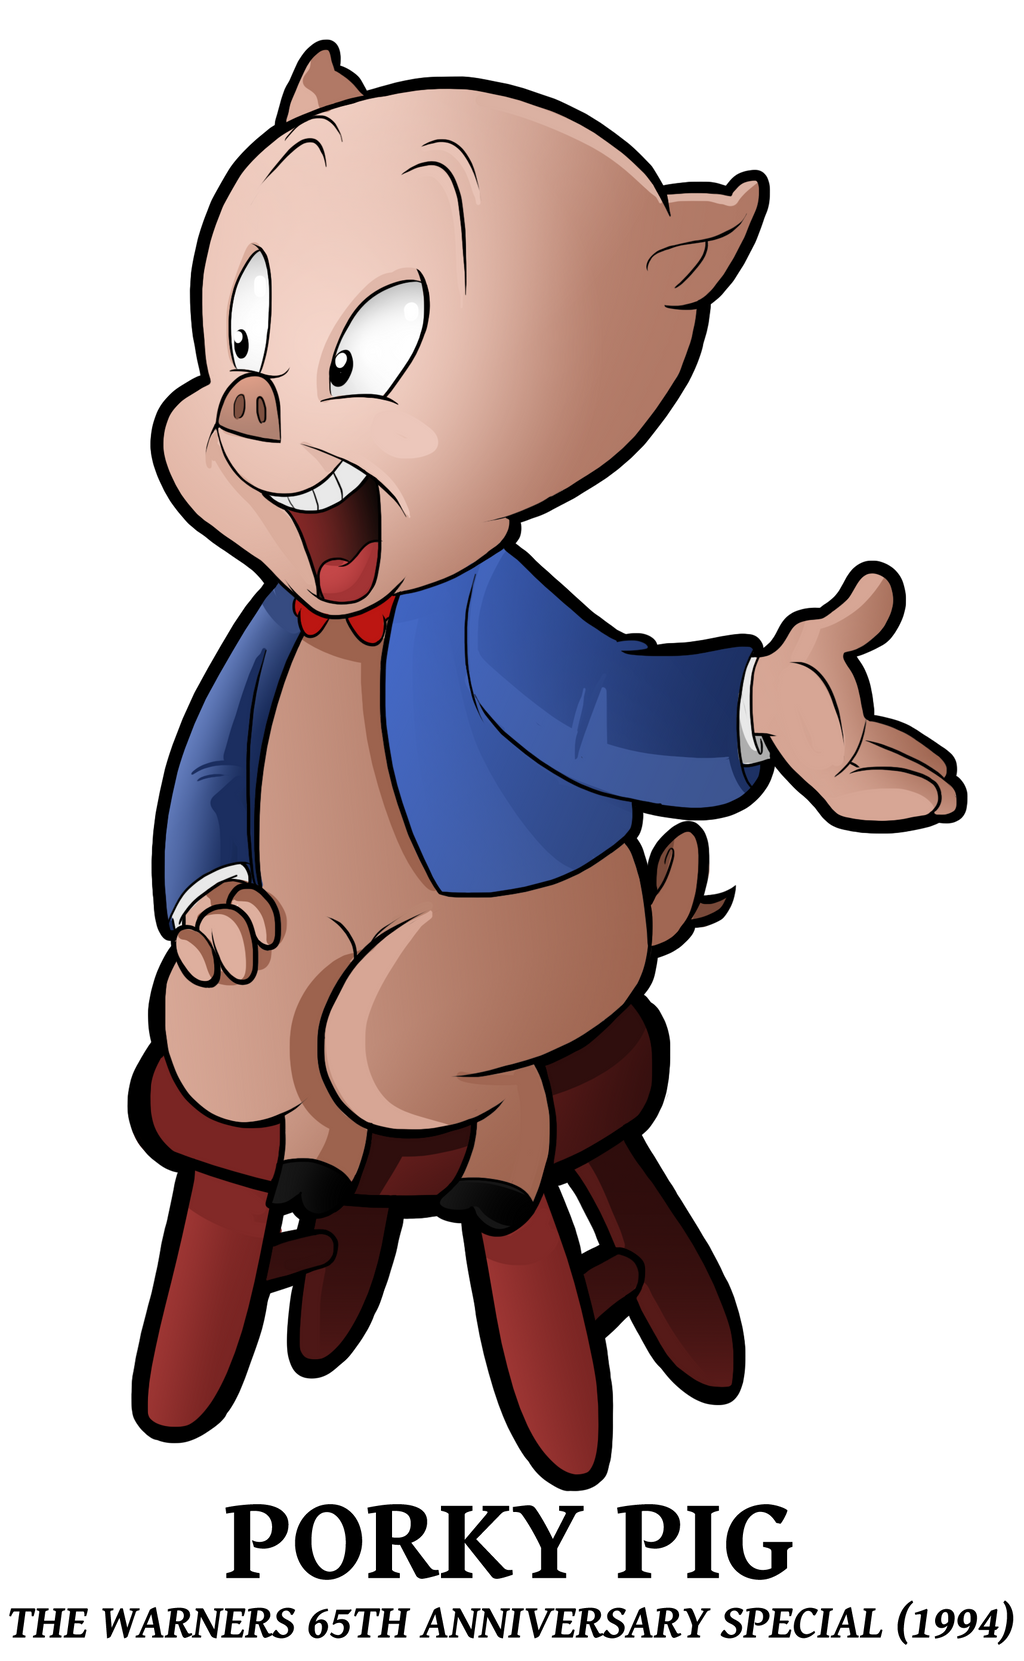 1993 - Porky Pig